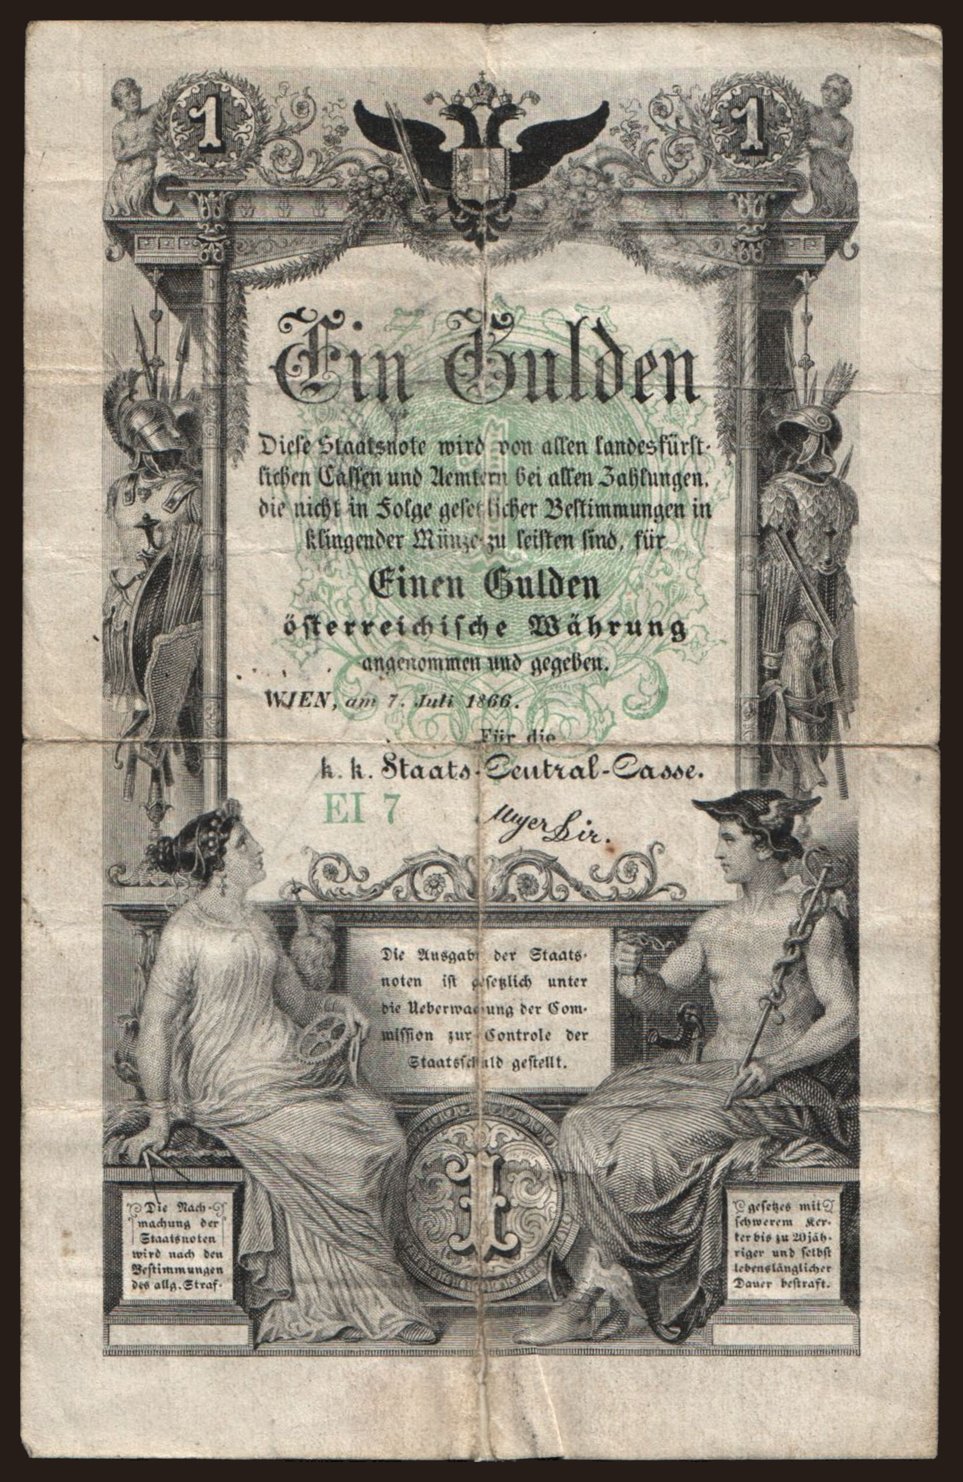 1 Gulden, 1866